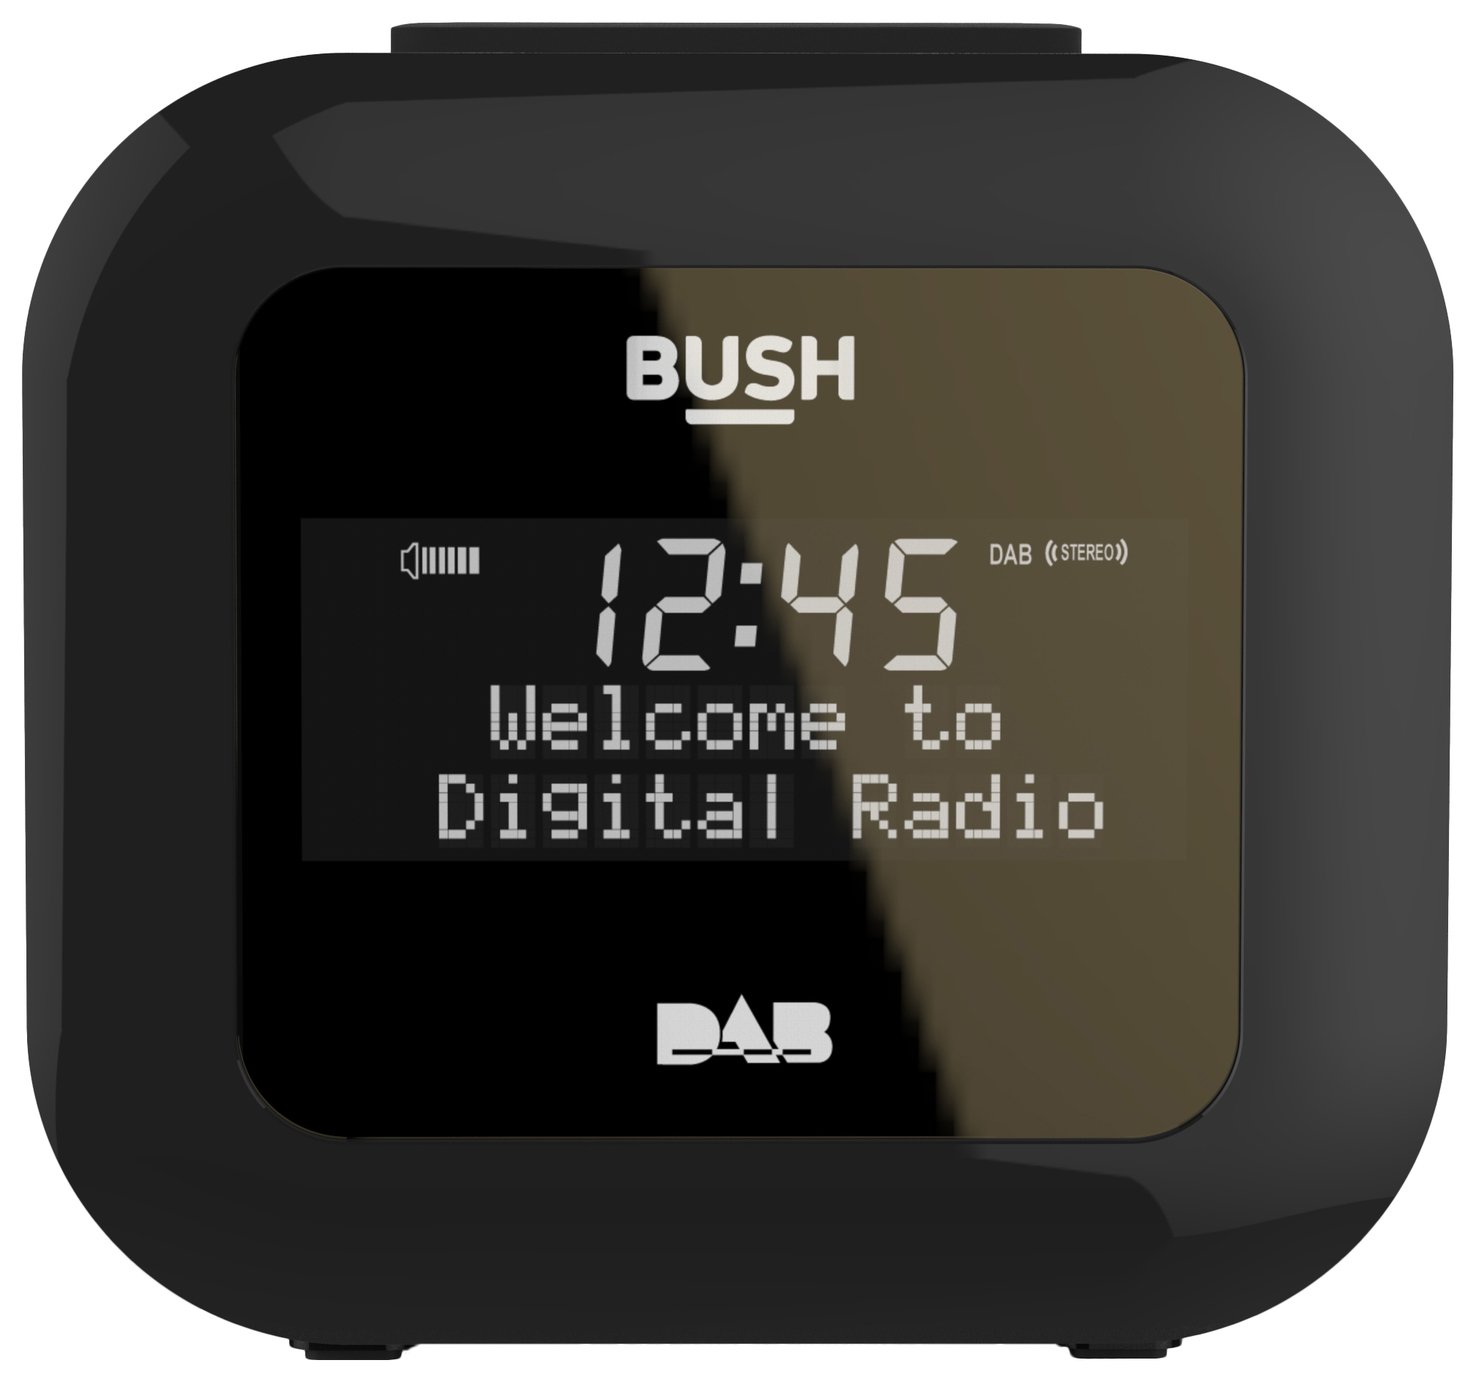 Bush USB DAB Clock Radio - Black